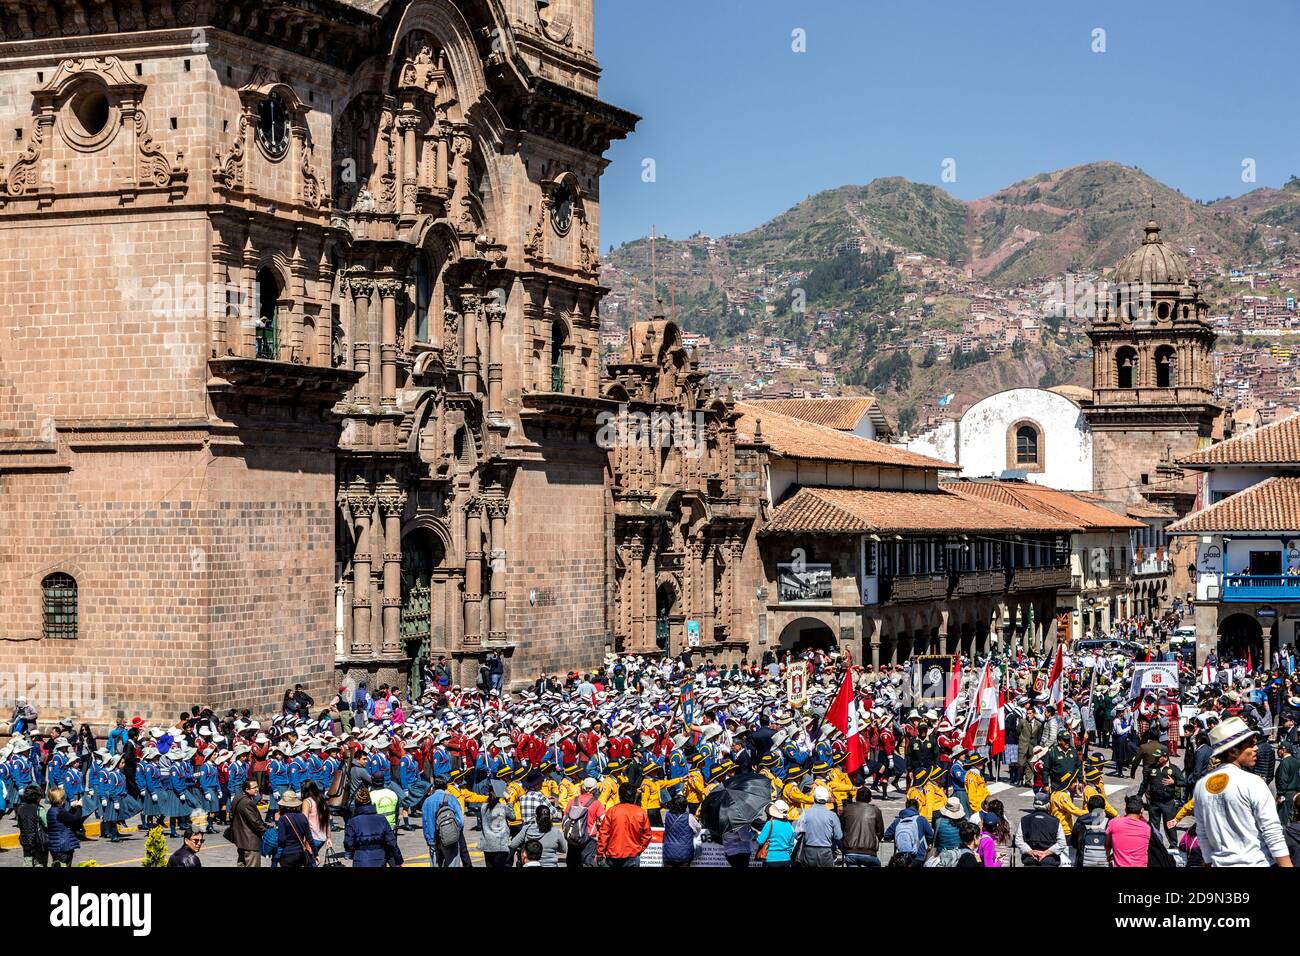 Gruppi di scuole per bambini in parata durante l'evento Juramentacion de Policias Ecolares, la Chiesa Compania de Jesus sulla sinistra, Plaza de Armas, Cusco, Perù Foto Stock